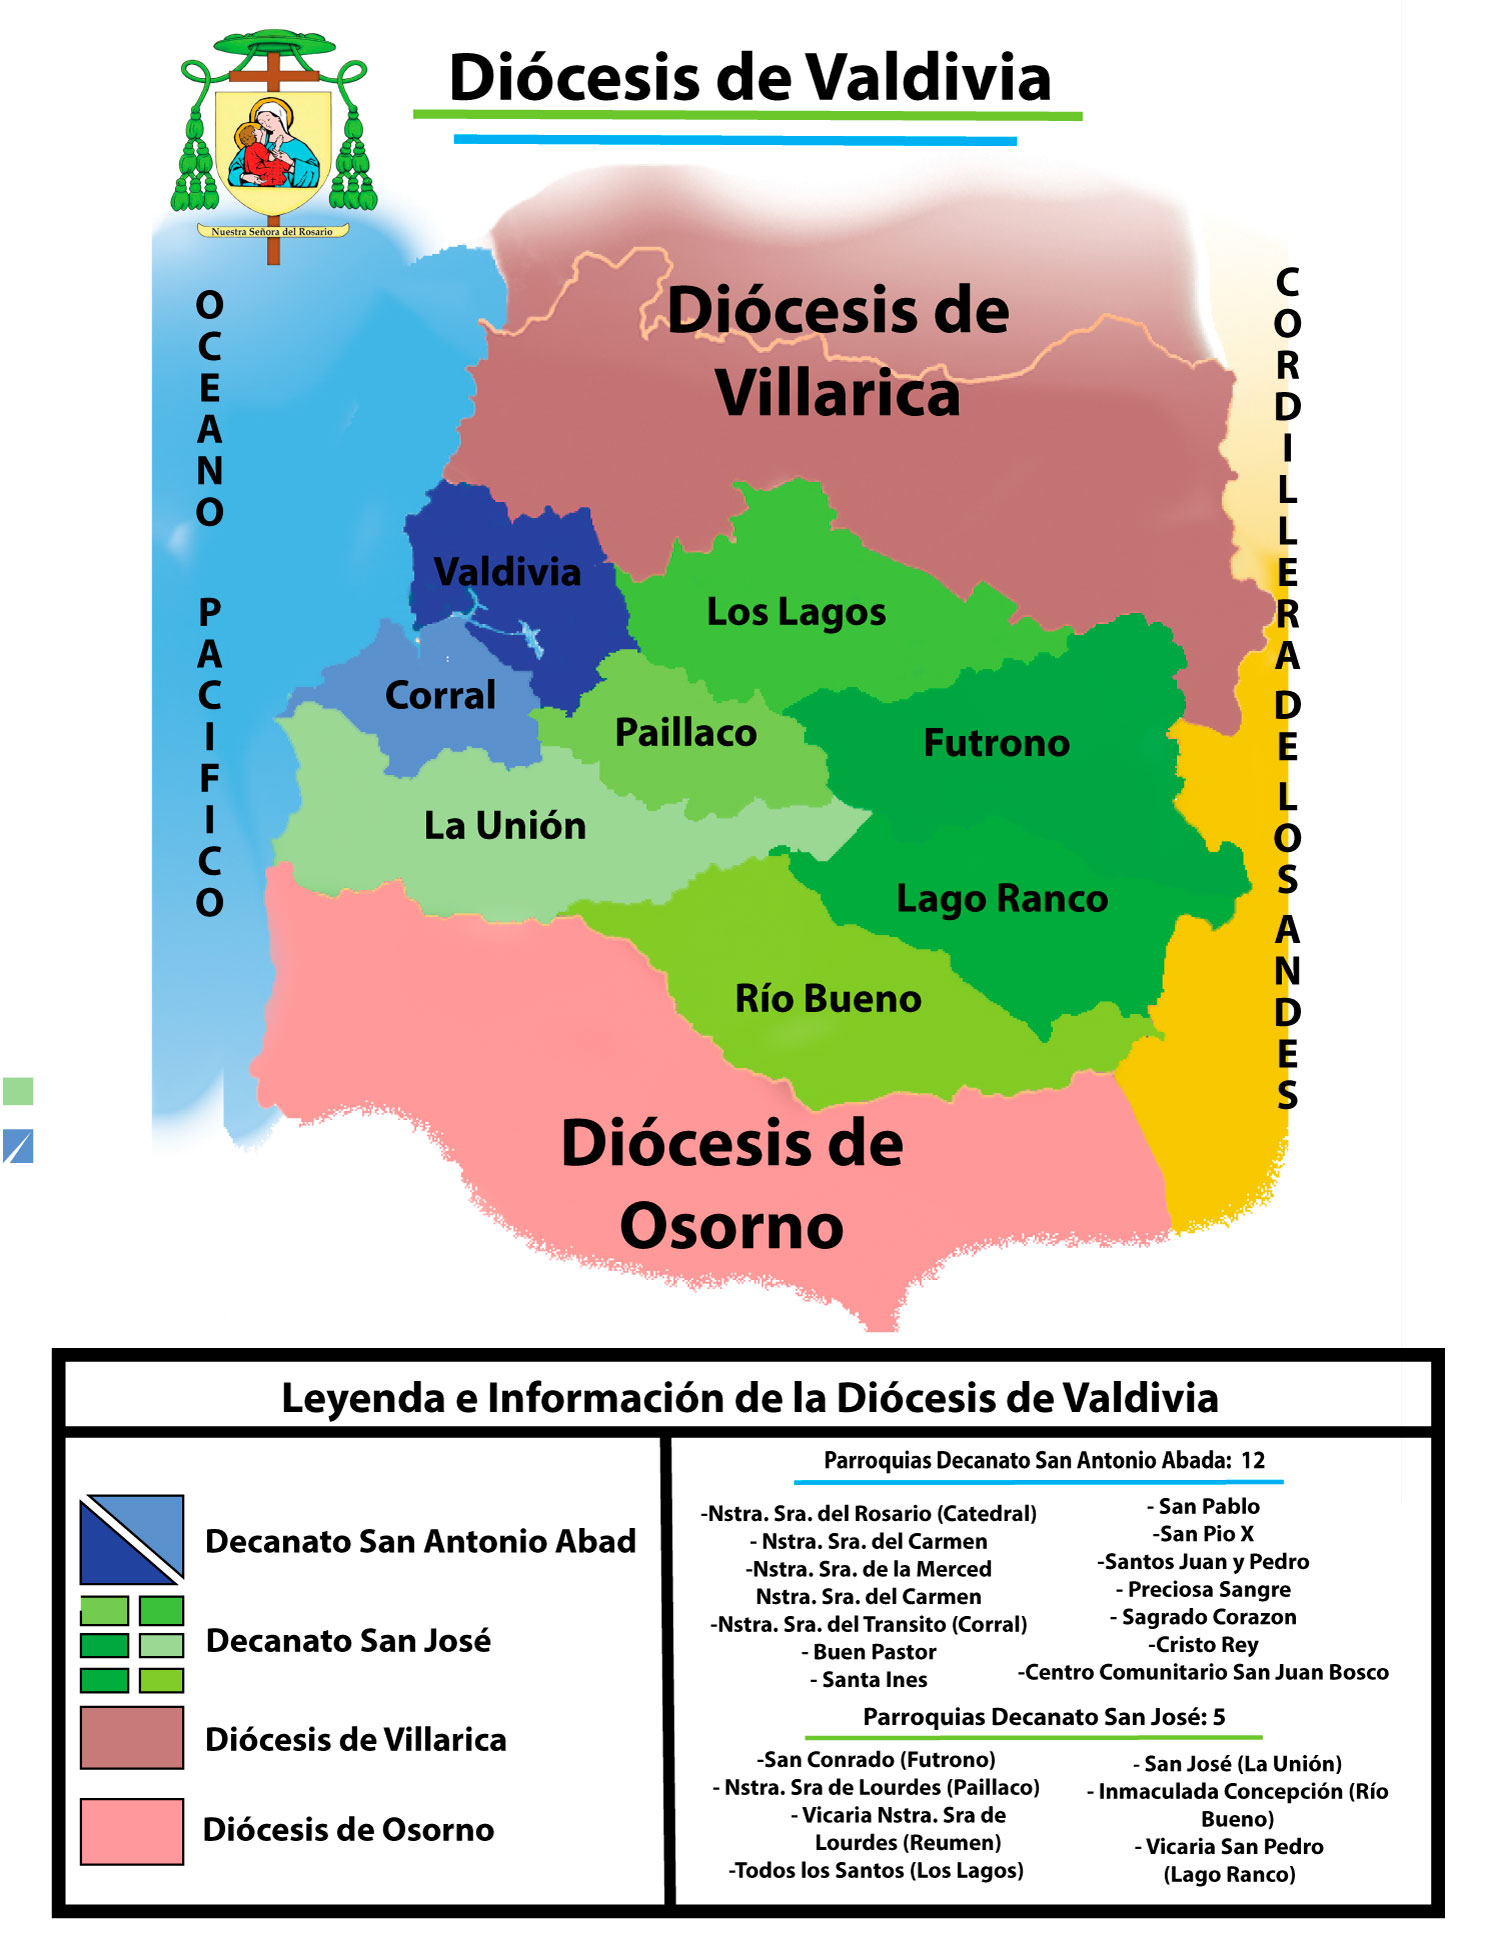 Mapa de la Diócesis de Valdivia<br>Hacer click para agrandar.